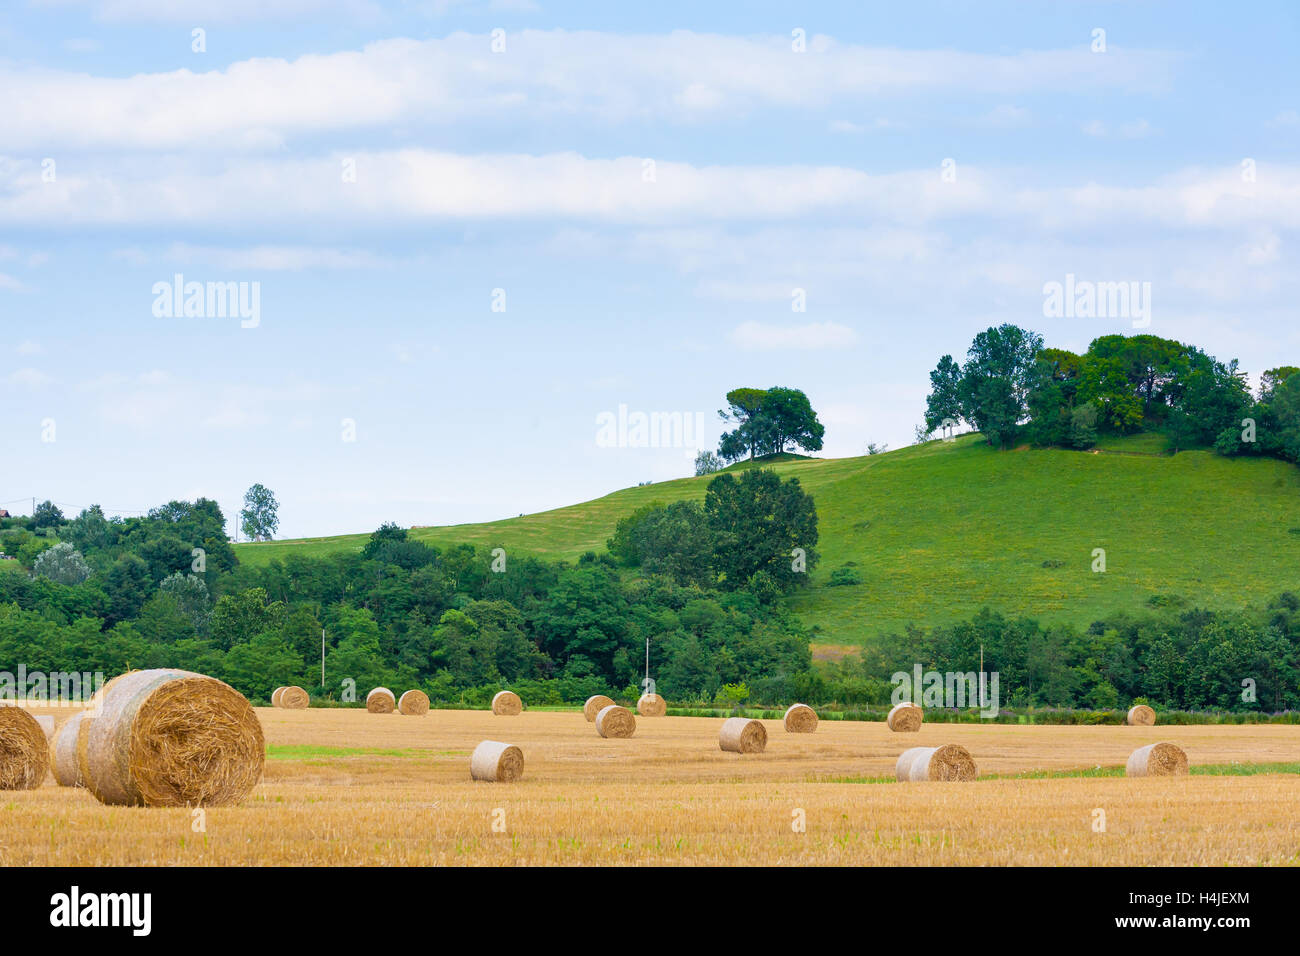 Campagne italienne panorama. Les balles rondes sur champ de blé. L'agriculture, de la vie rurale Banque D'Images